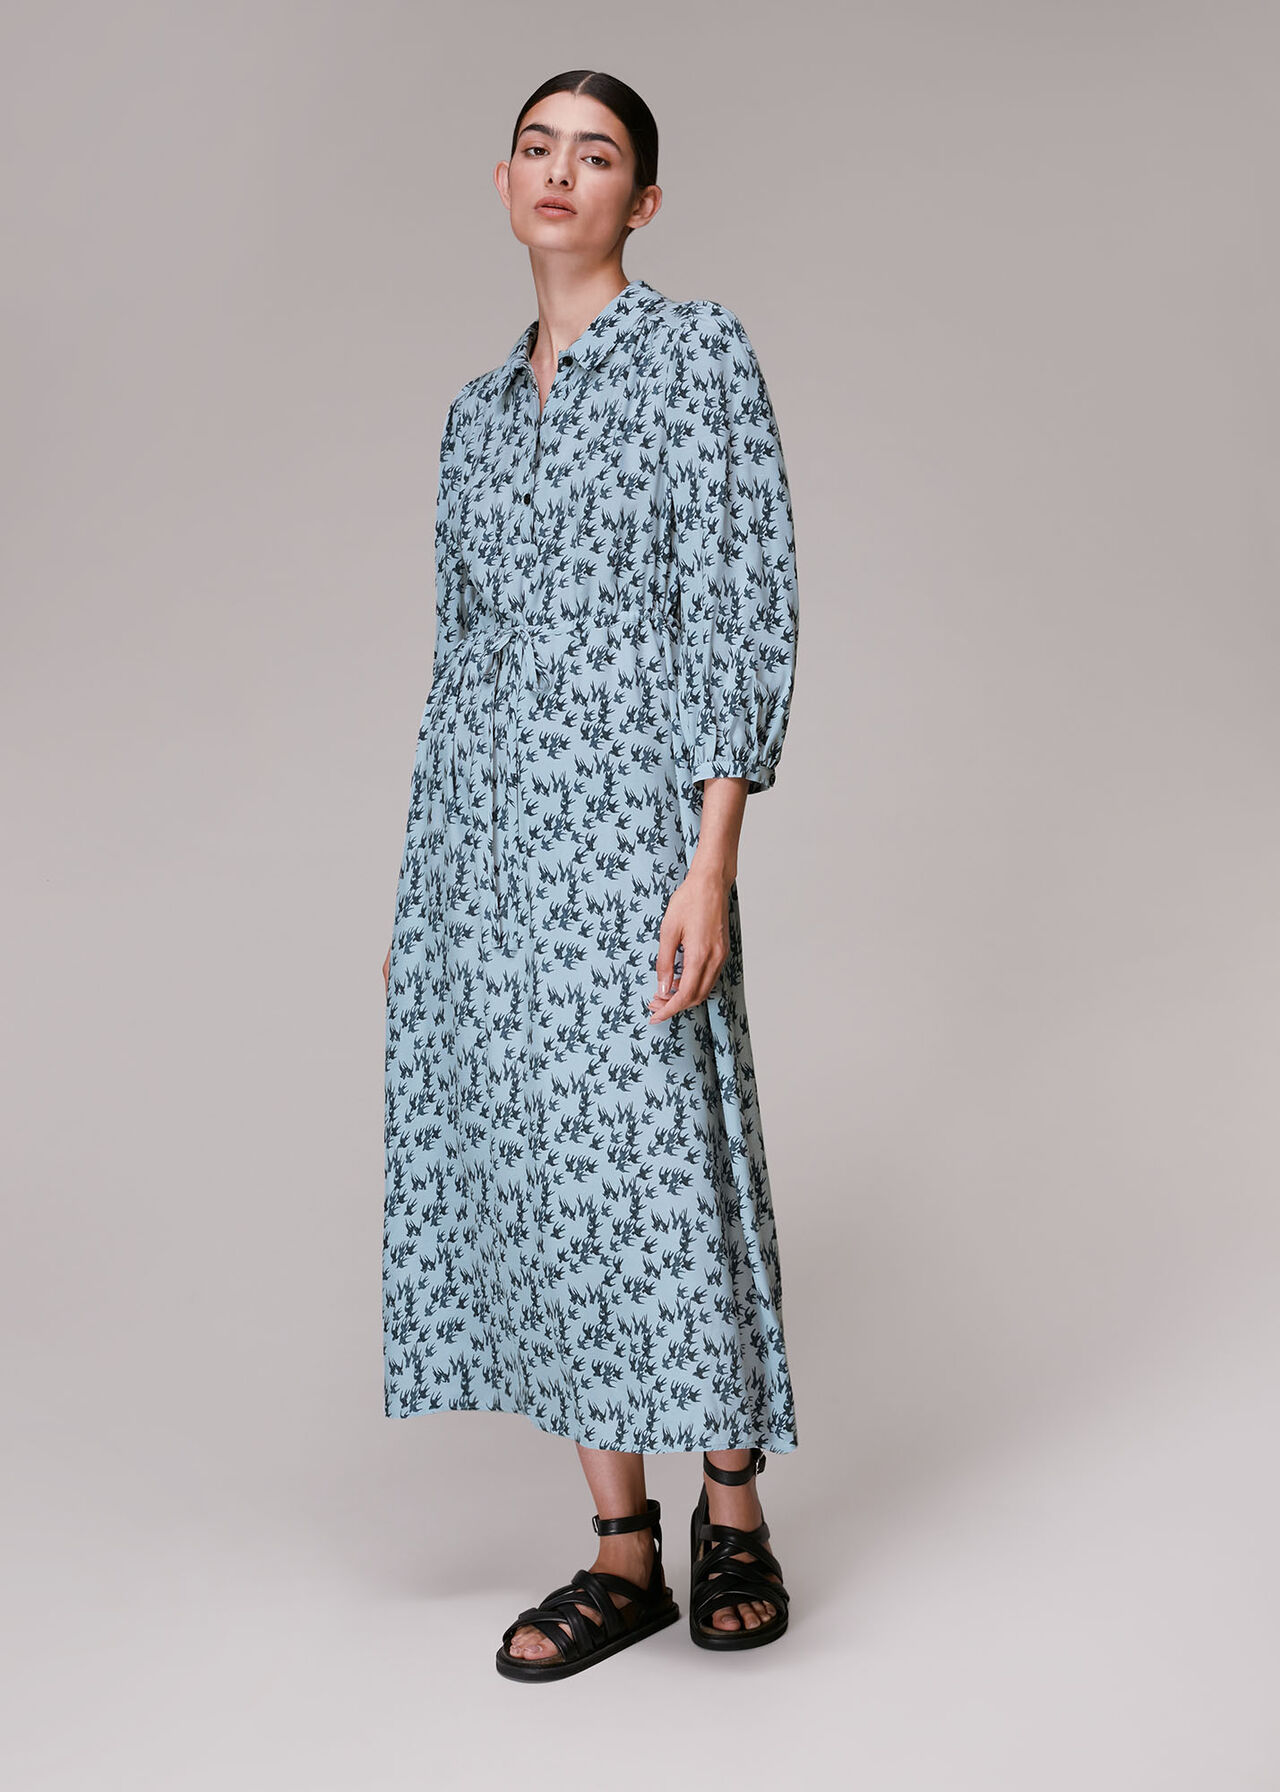 Blue/Multi Swallows Print Midi Dress | WHISTLES | Whistles UK